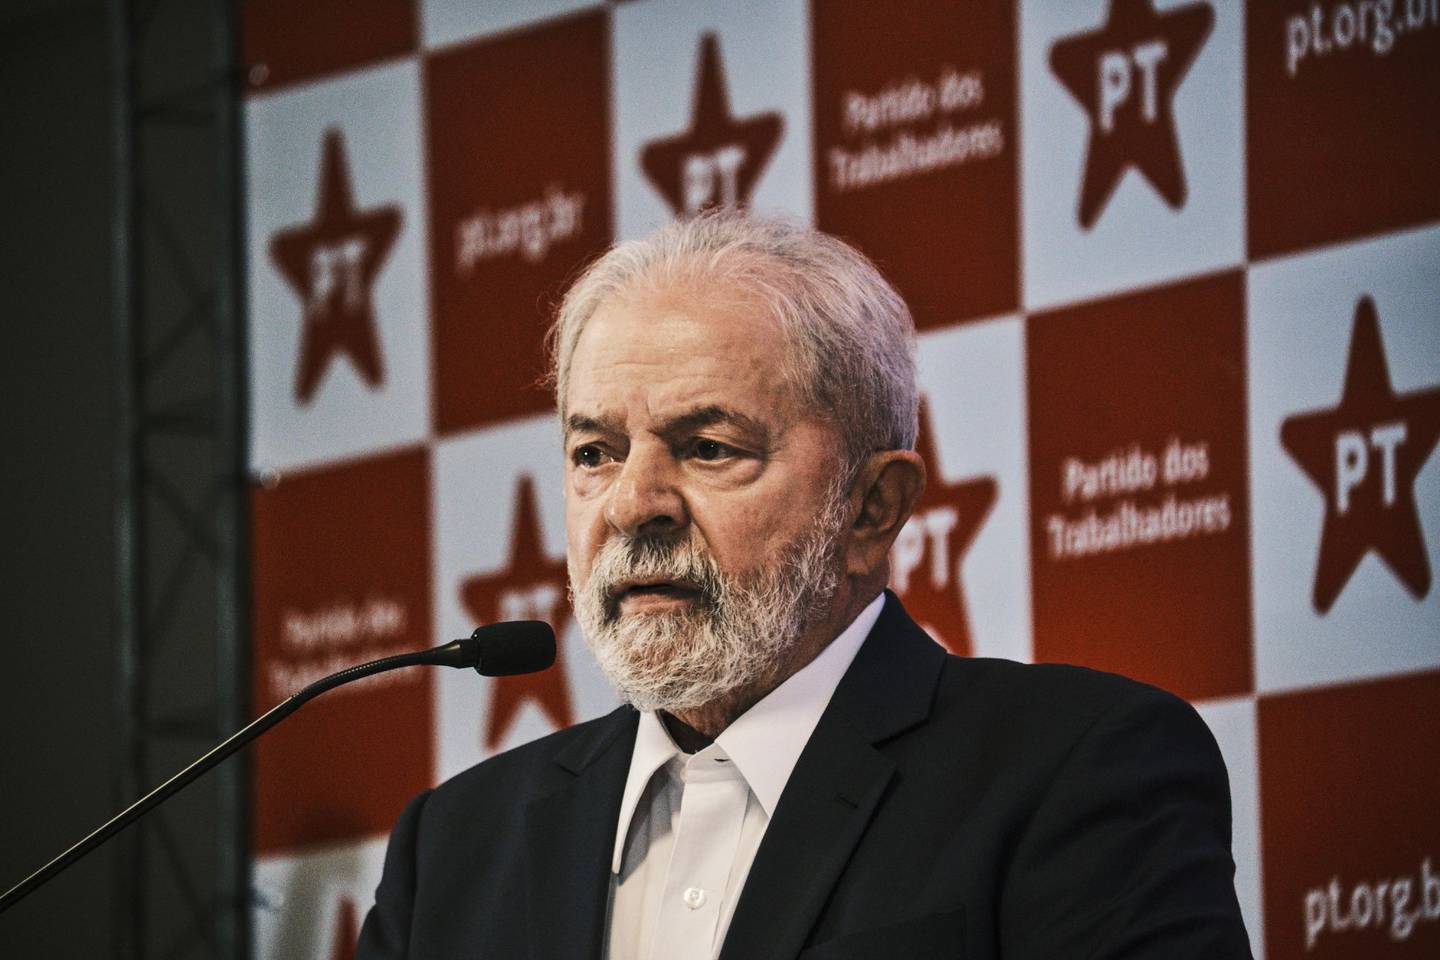 tem muito a ver com a capacidade percebida de Lula para governar